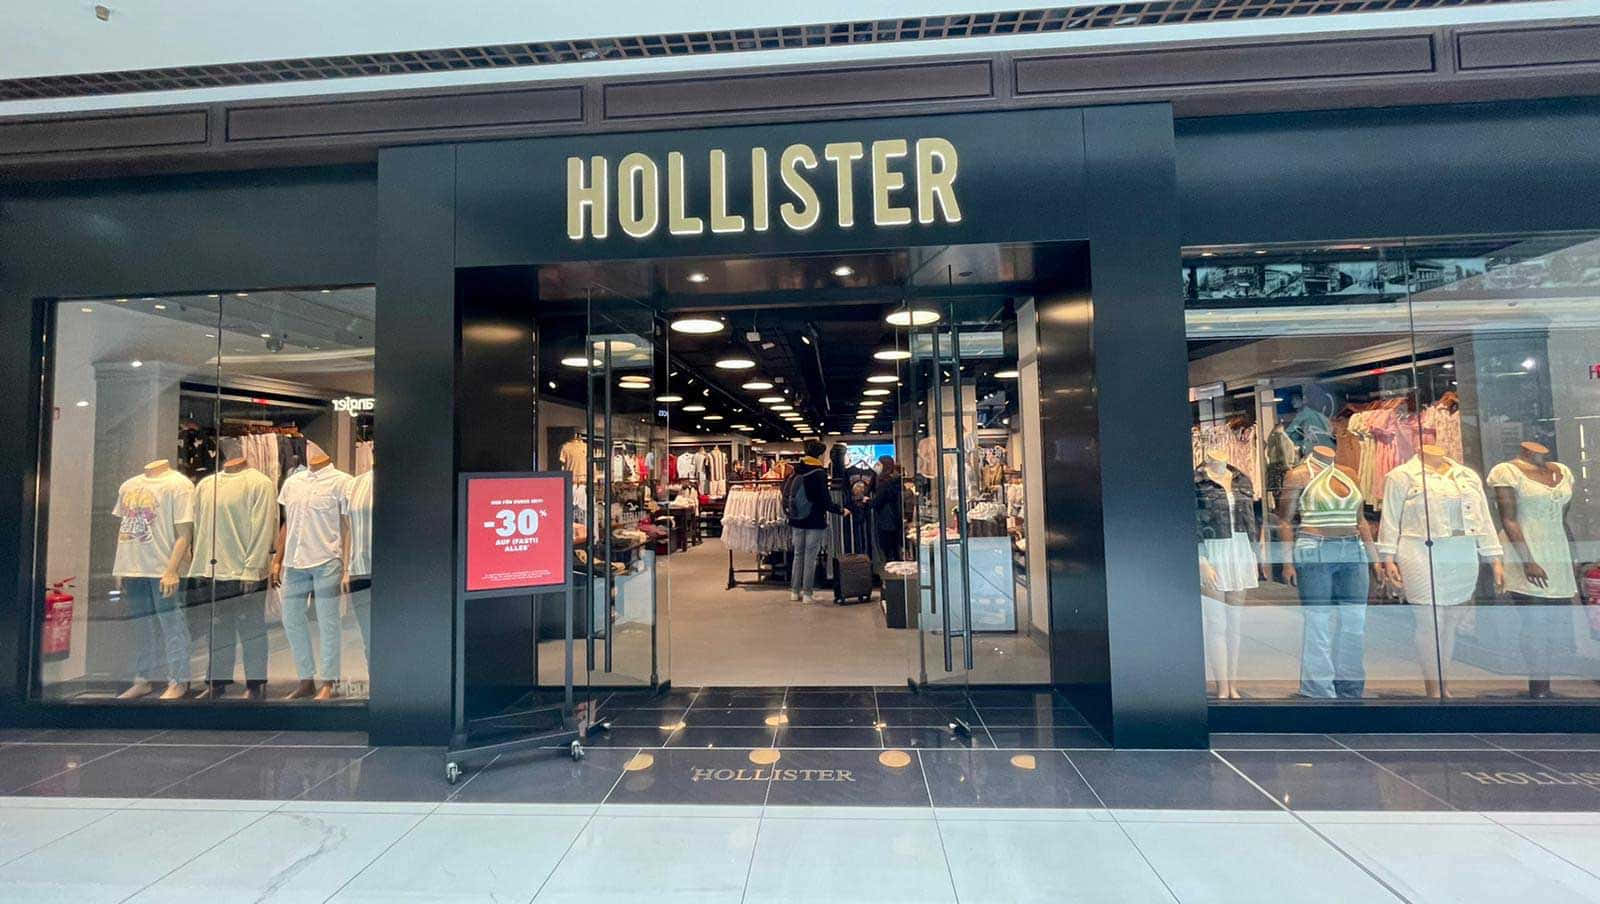 Hollisterbutik I En Indkøbscenter Med Et Skilt.